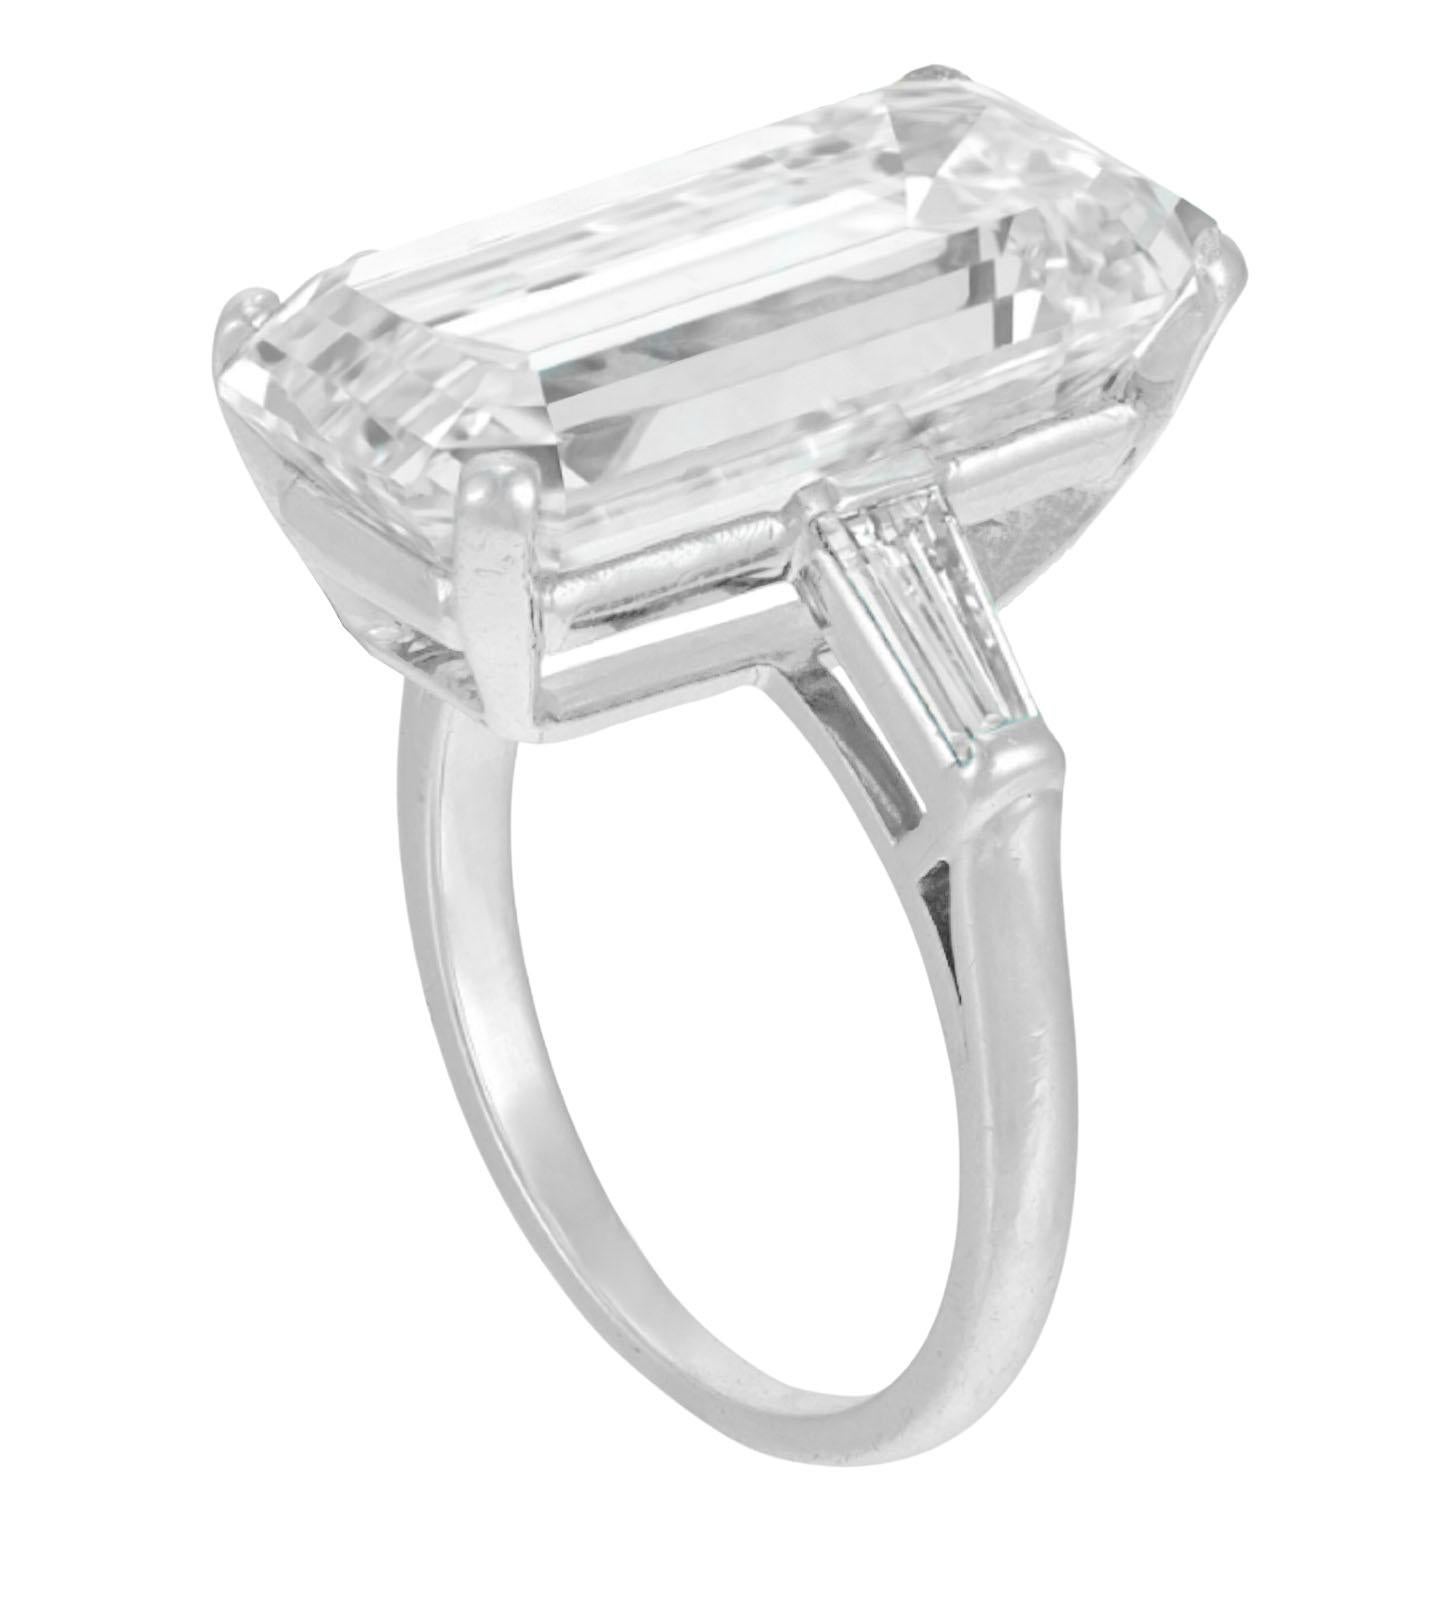 GIA-zertifizierter 8-Karat-Smaragdschliff-Diamant-Solitär-Verlobungsring. 
Der Hauptdiamant ist ein runder Diamant im Brillantschliff mit einem Gewicht von 8 Karat, Farbe E, Reinheit VVS2. Der Mittelstein hat eine ausgezeichnete Politur, eine